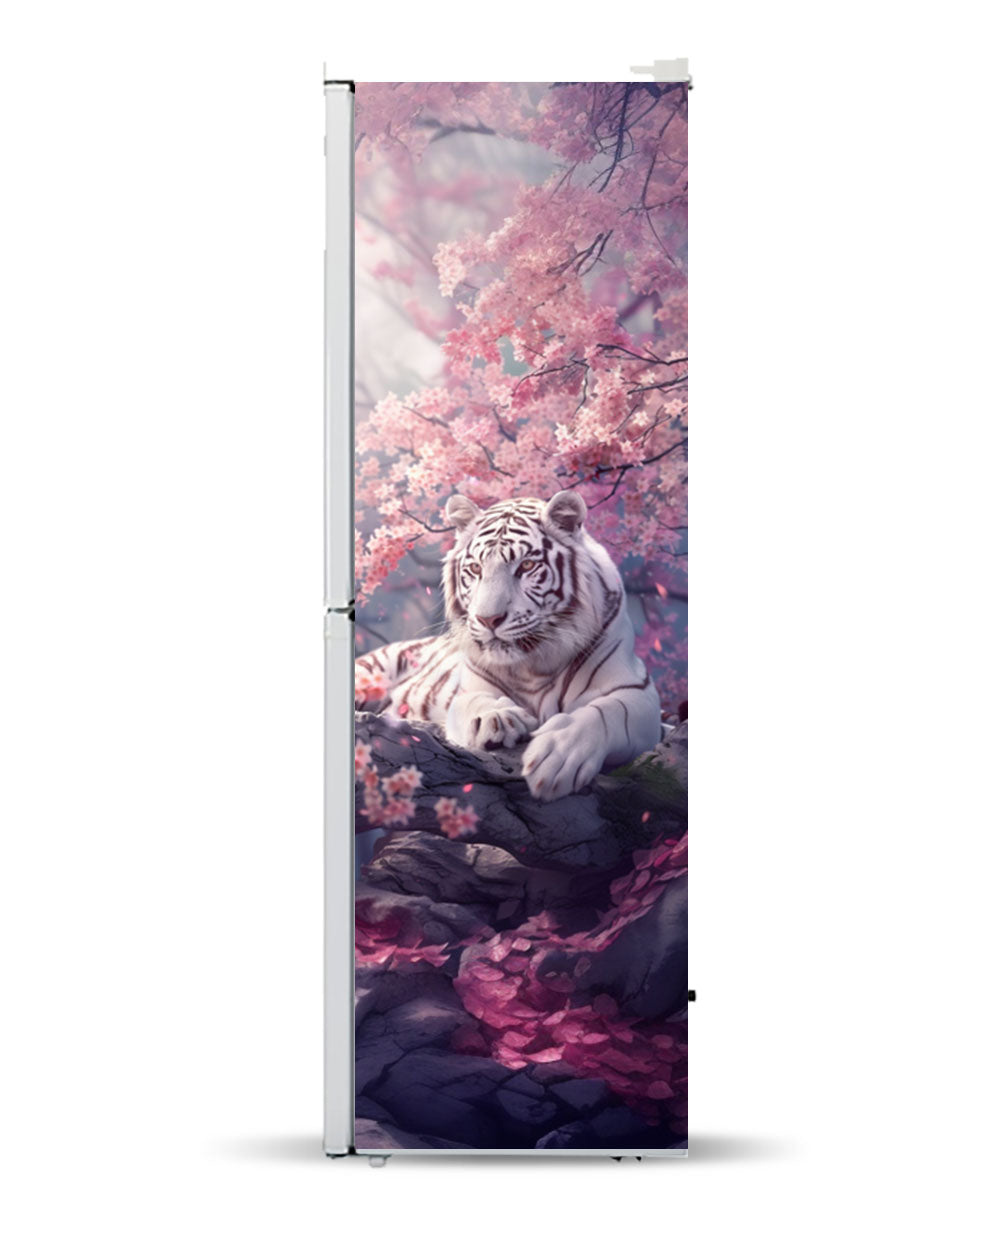 A Sakura tiger